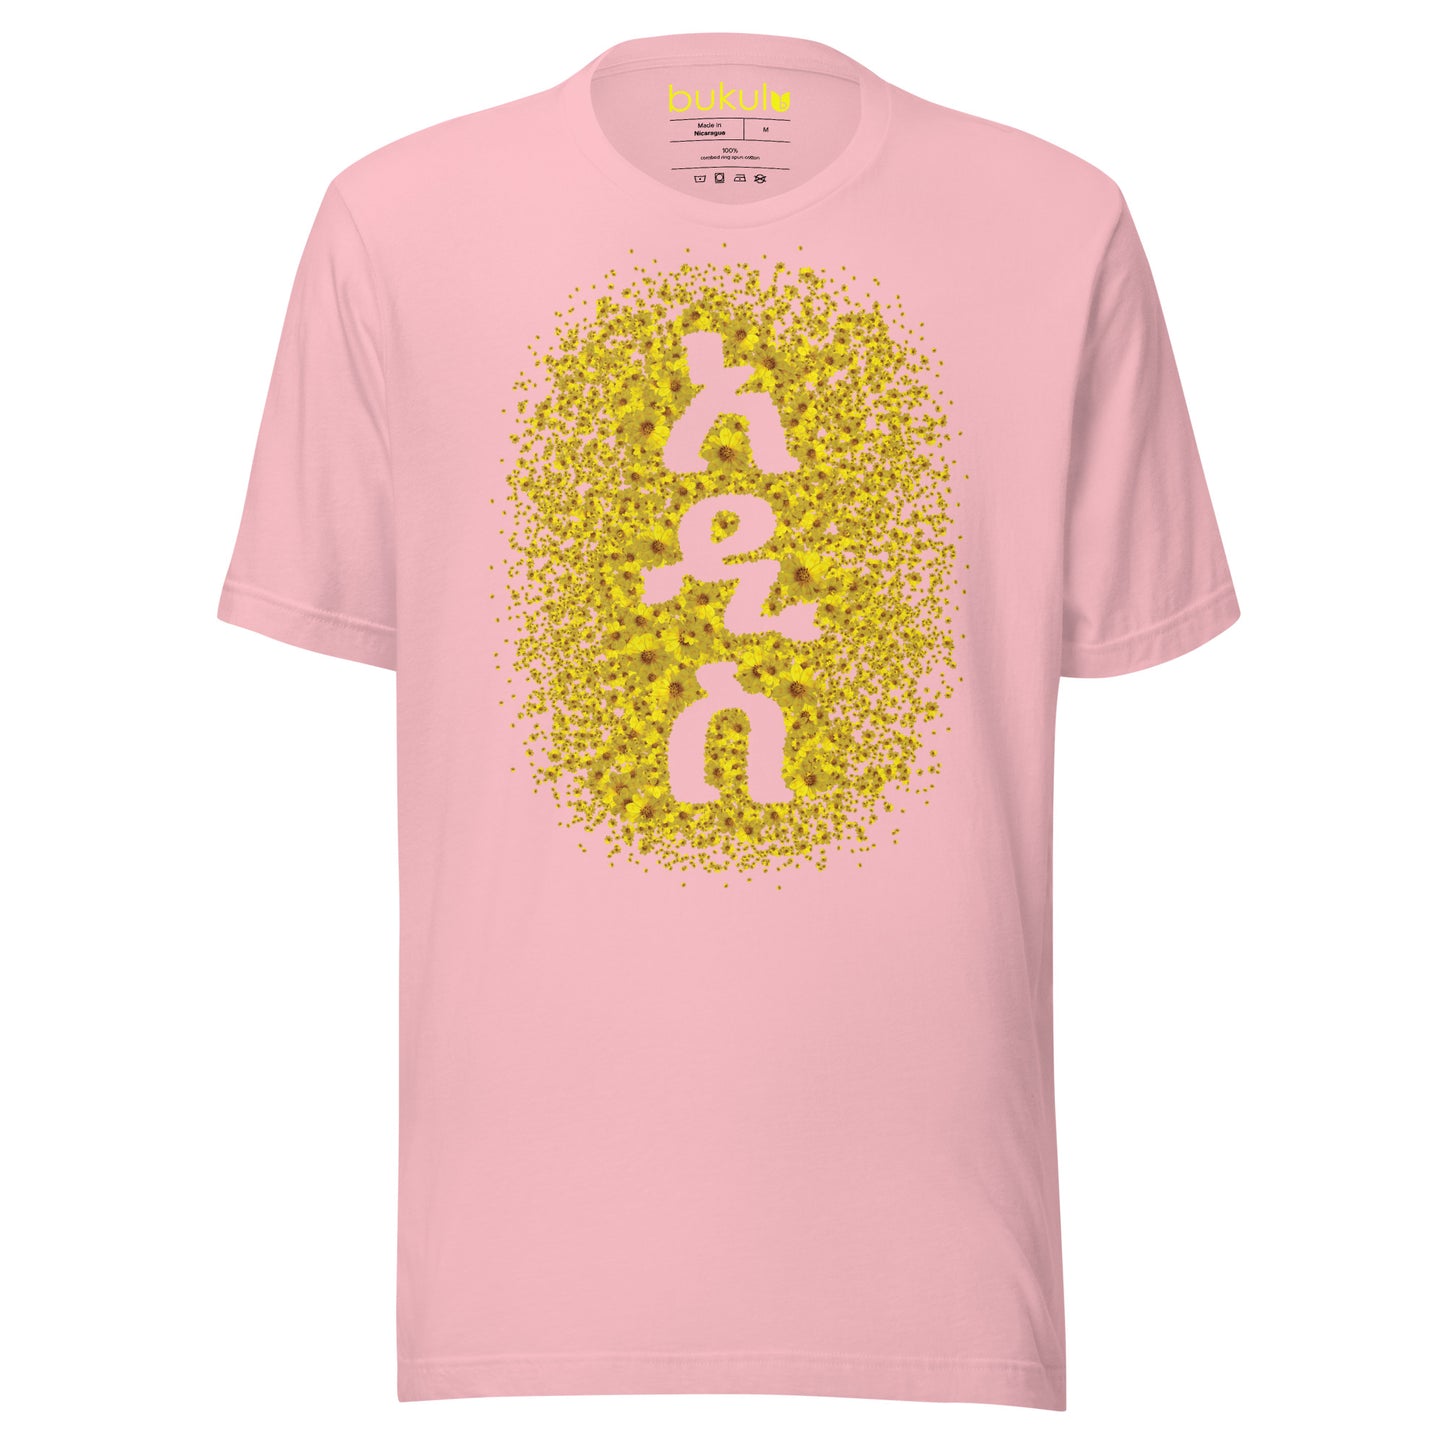 አዲስ ዓመት - New Year Adey Abeba | Yellow Daisy Flower T-Shirt Mens - bukulu